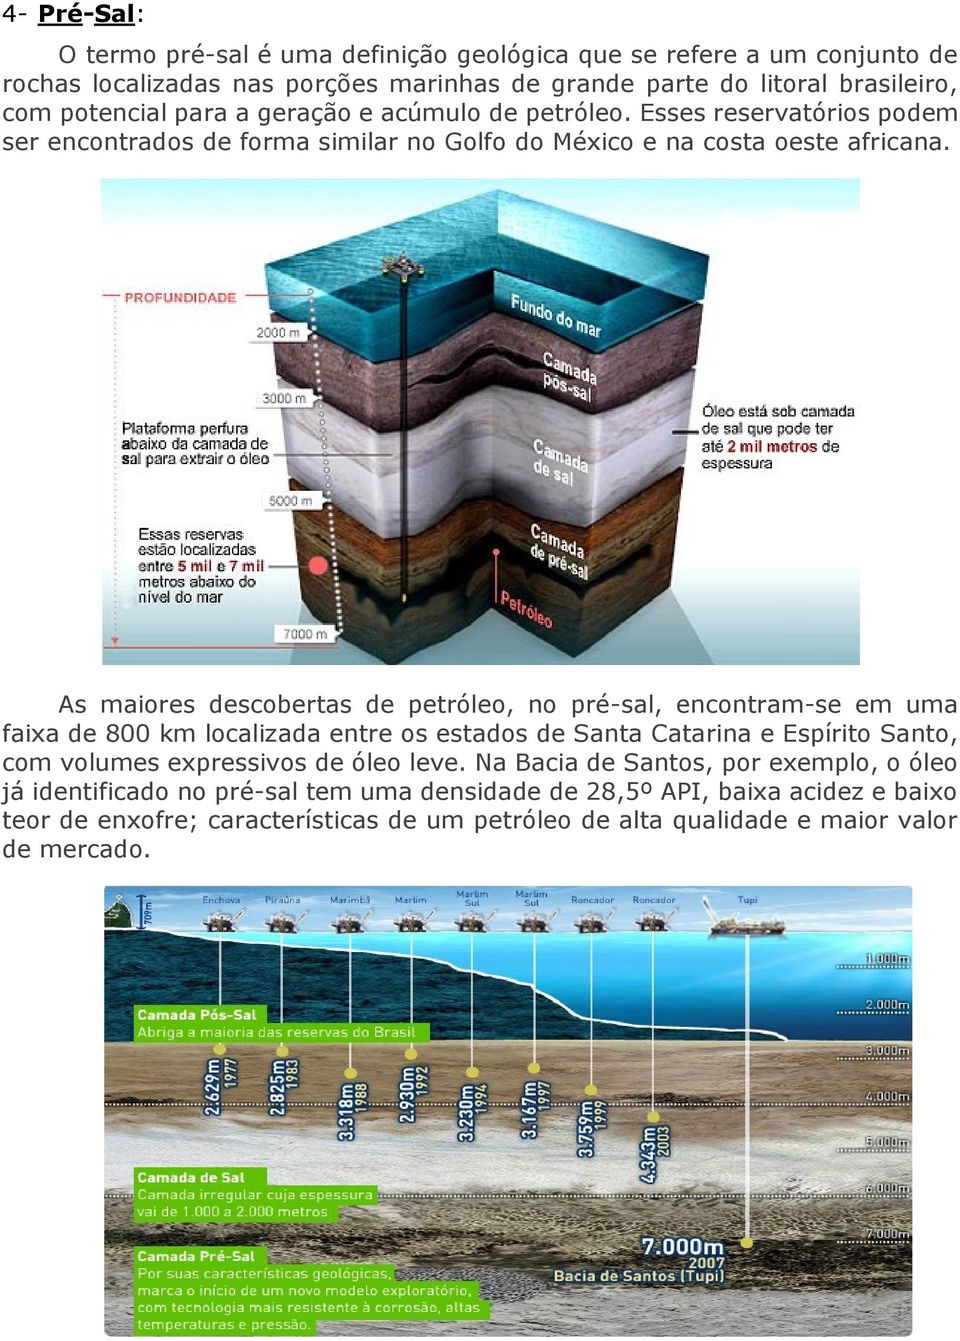 As maiores descobertas de petróleo, no pré-sal, encontram-se em uma faixa de 800 km localizada entre os estados de Santa Catarina e Espírito Santo, com volumes expressivos de óleo